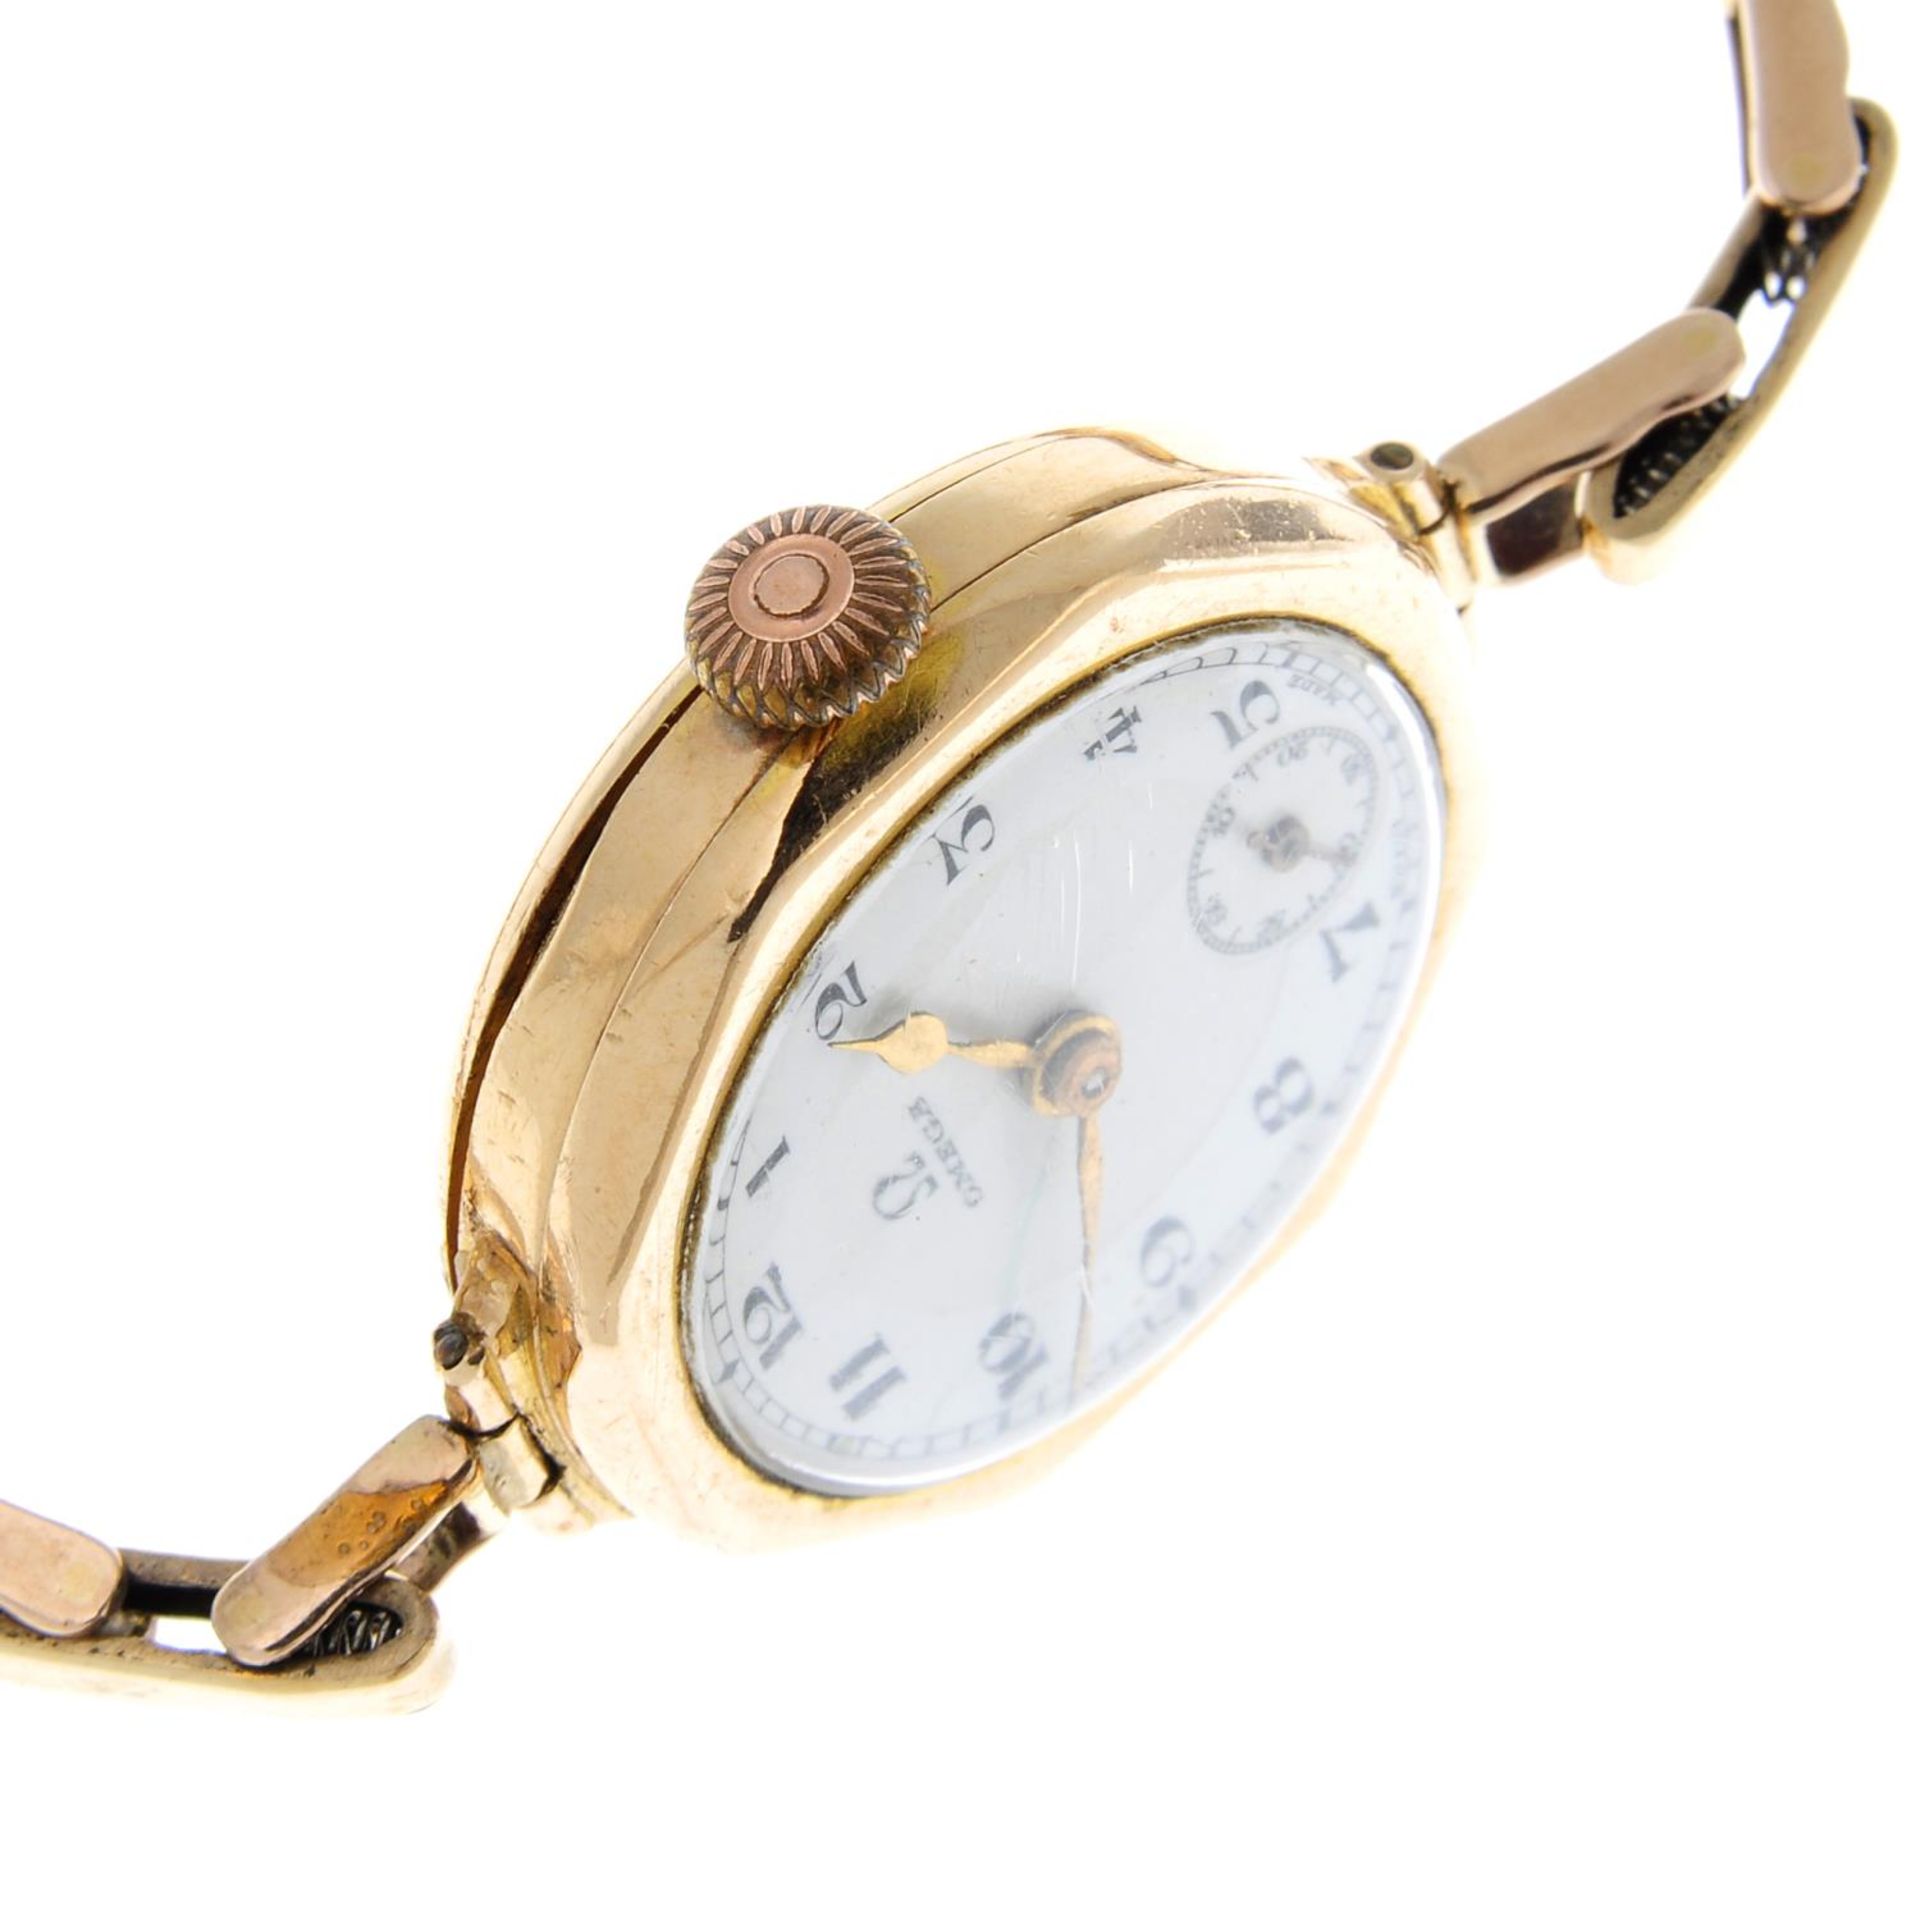 OMEGA - a bracelet watch. - Image 3 of 4